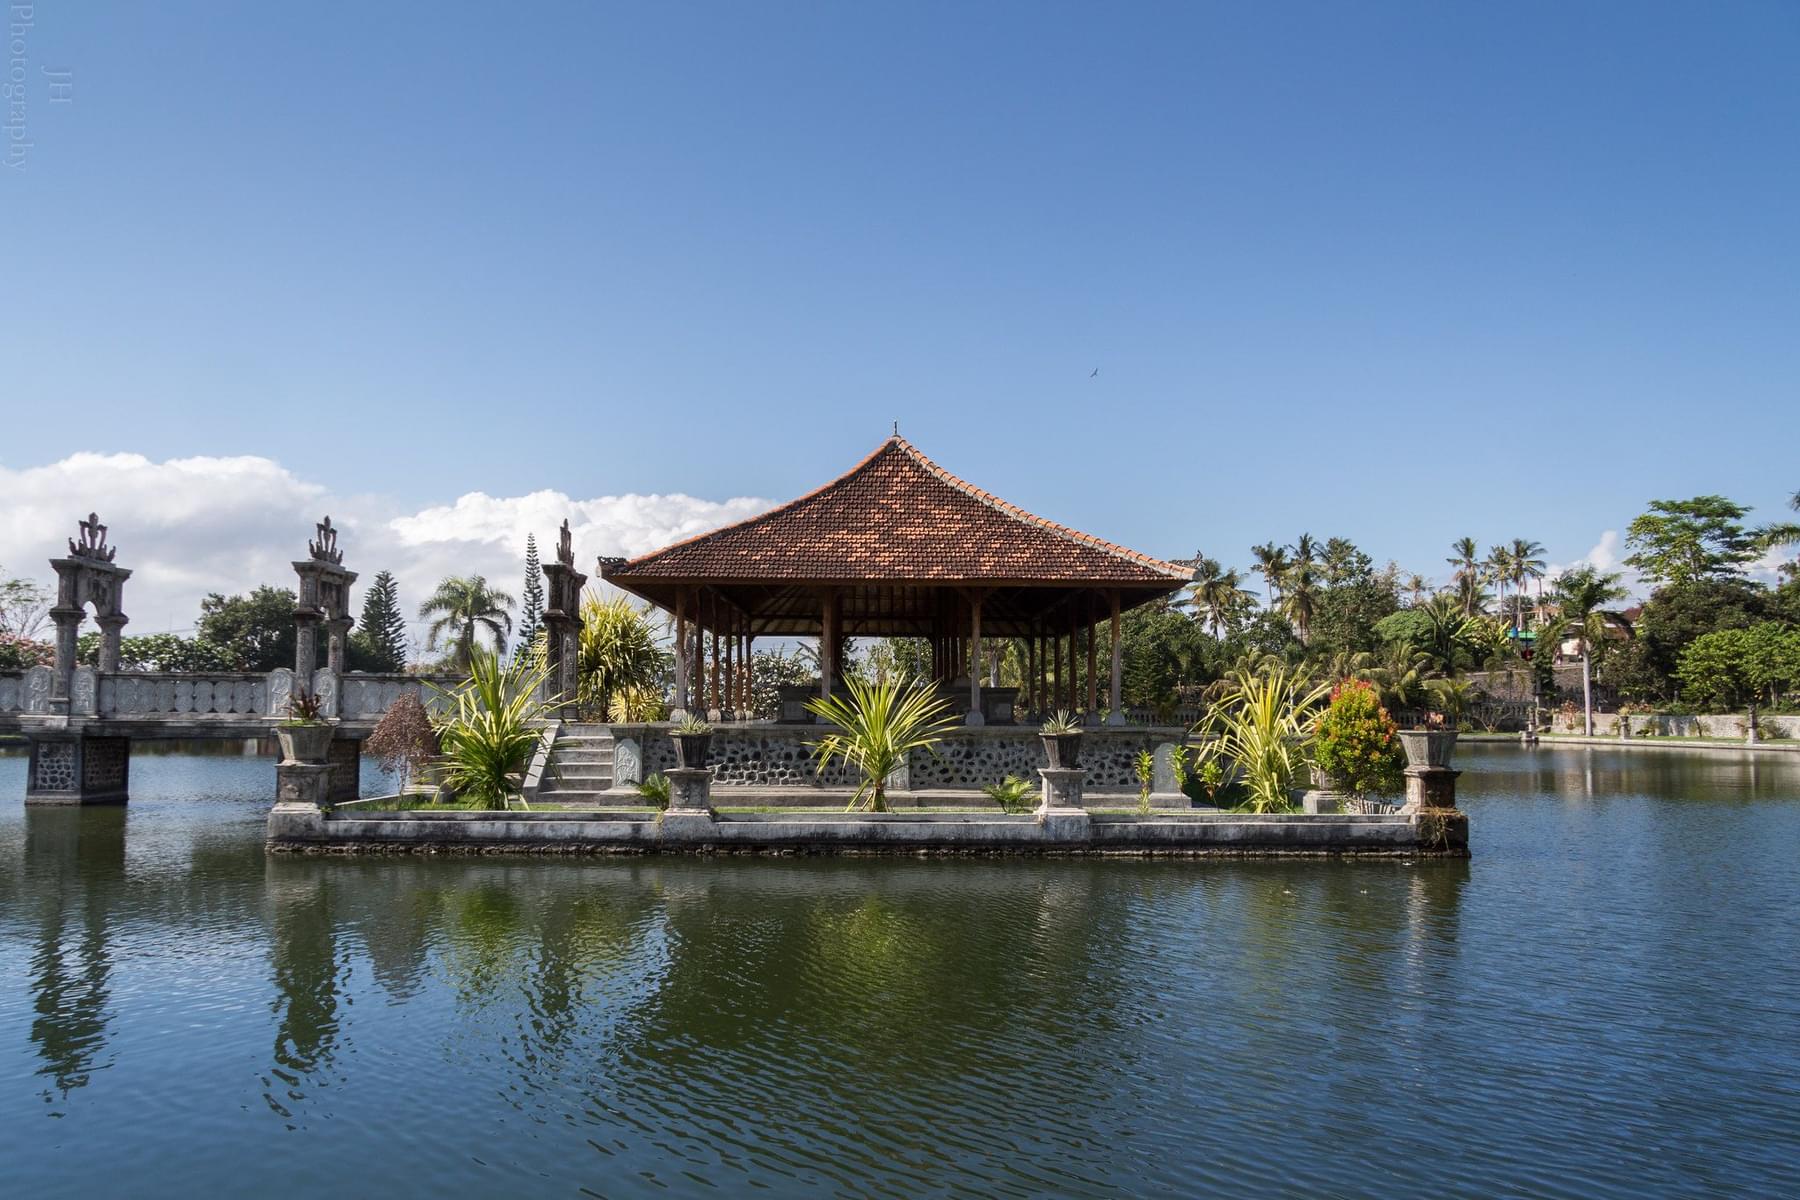 Explore Balai Kambang